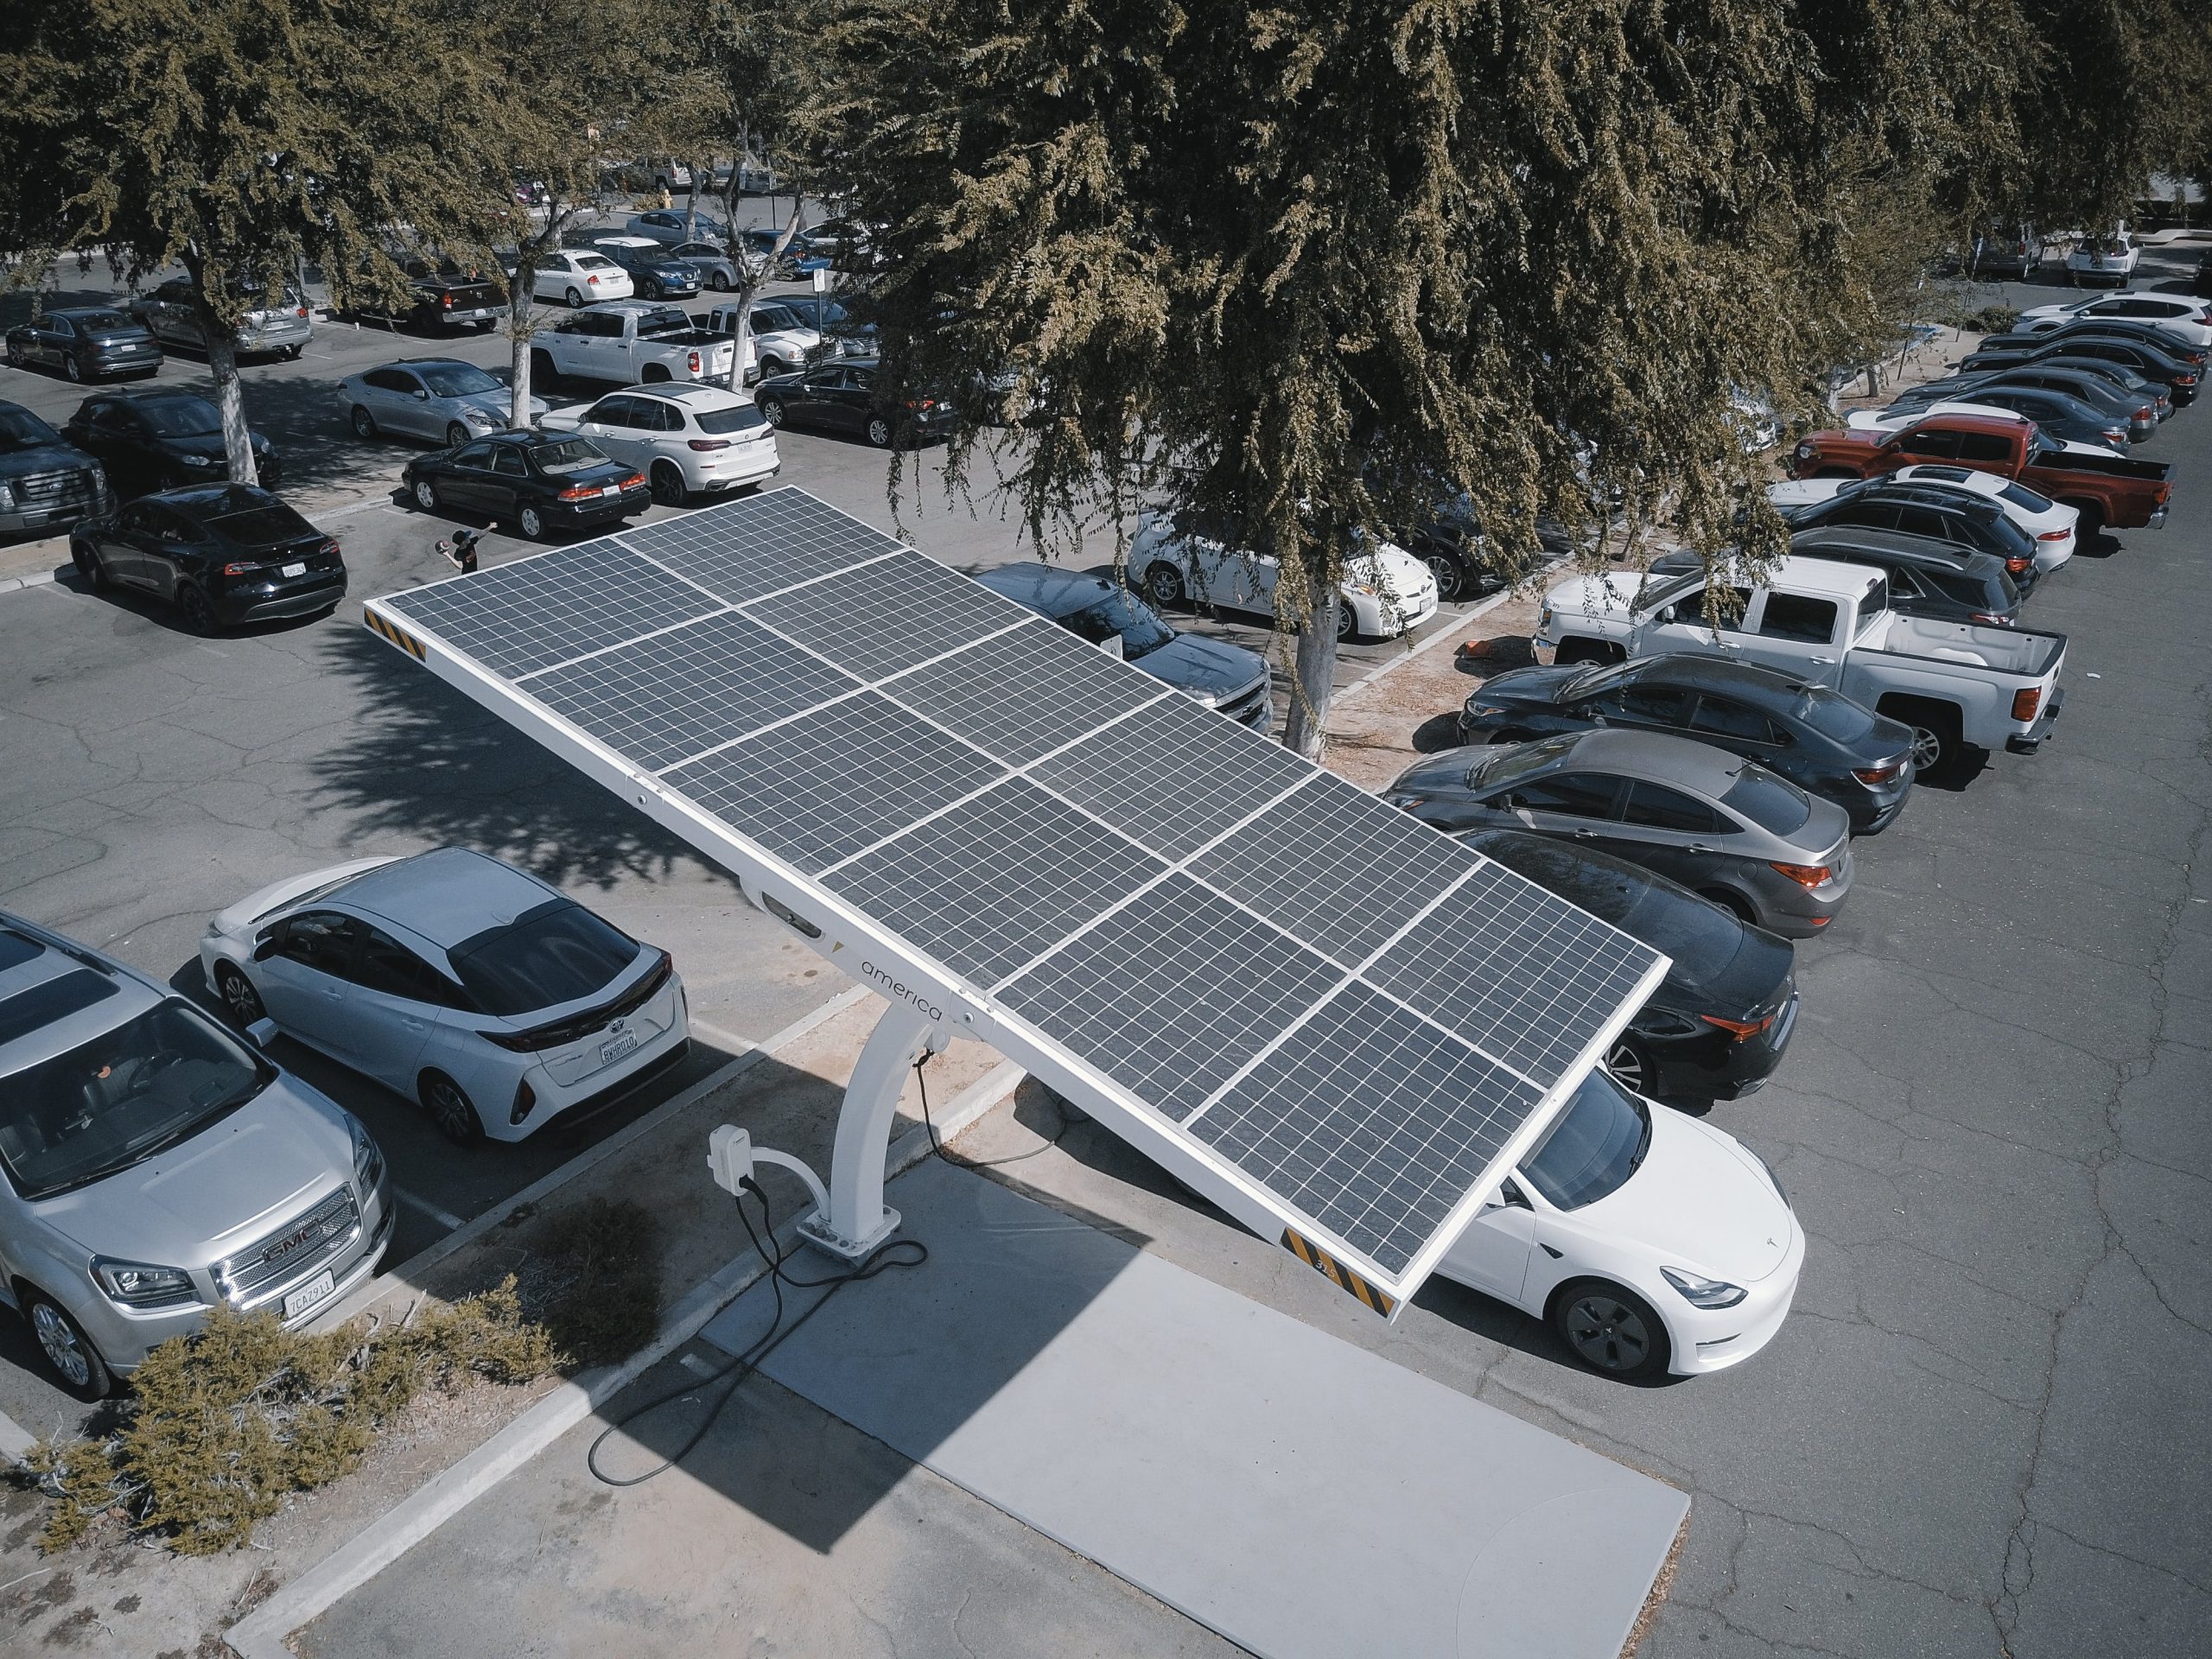 Renting de coches eléctricos: Contribuye al medio ambiente mientras disfrutas de la conducción